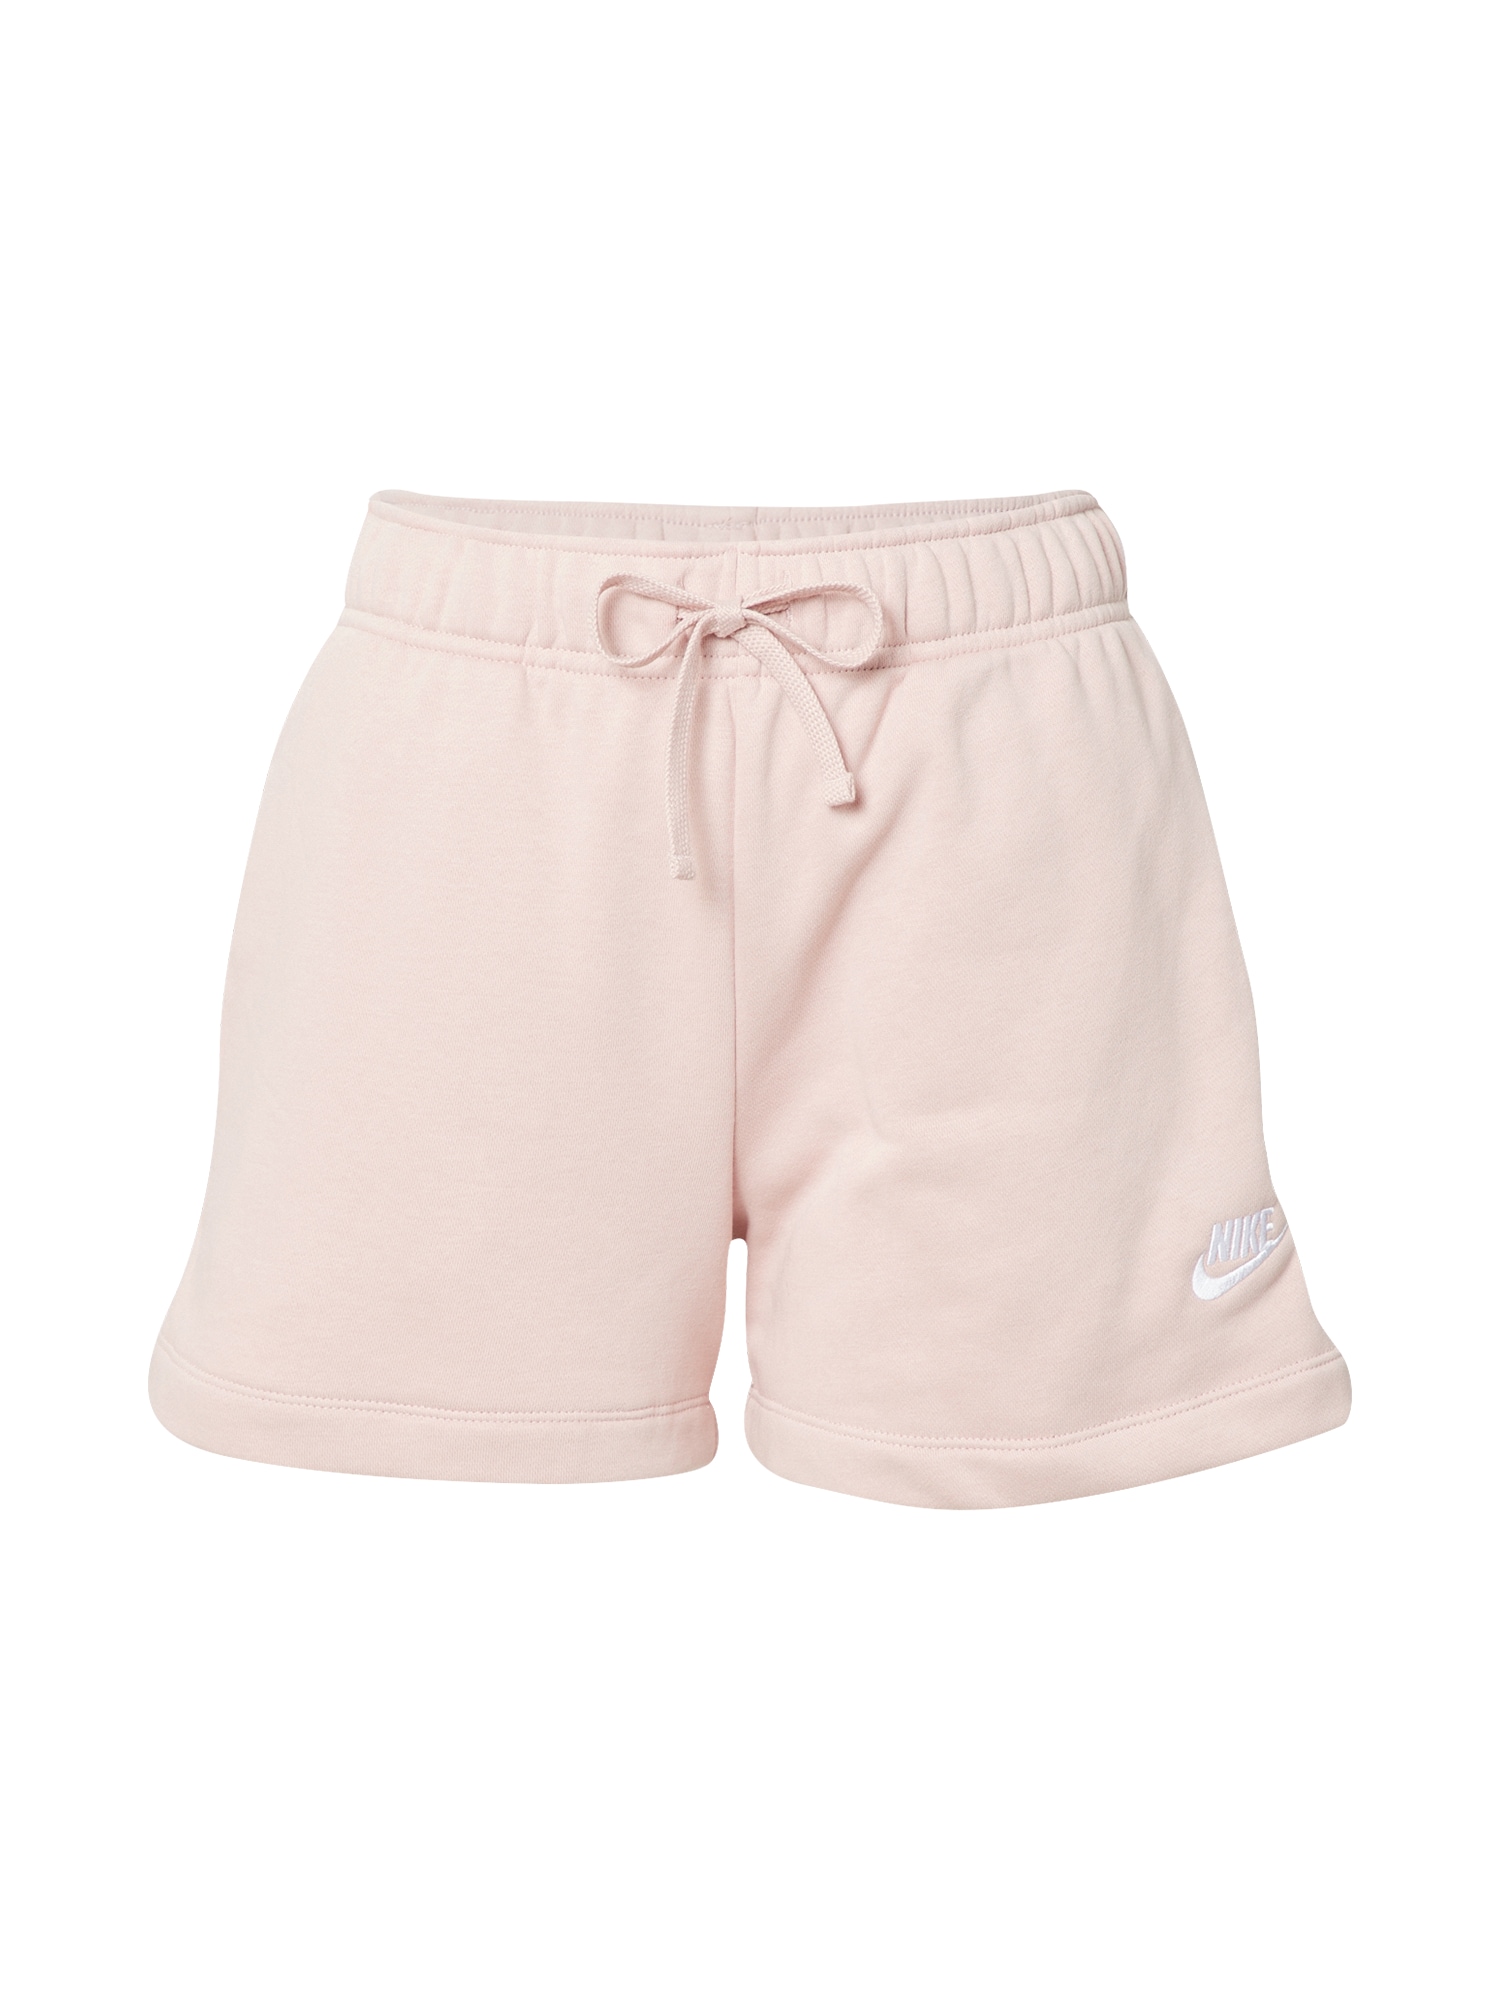 Nike Sportswear Nadrág  fehér / pasztell-rózsaszín